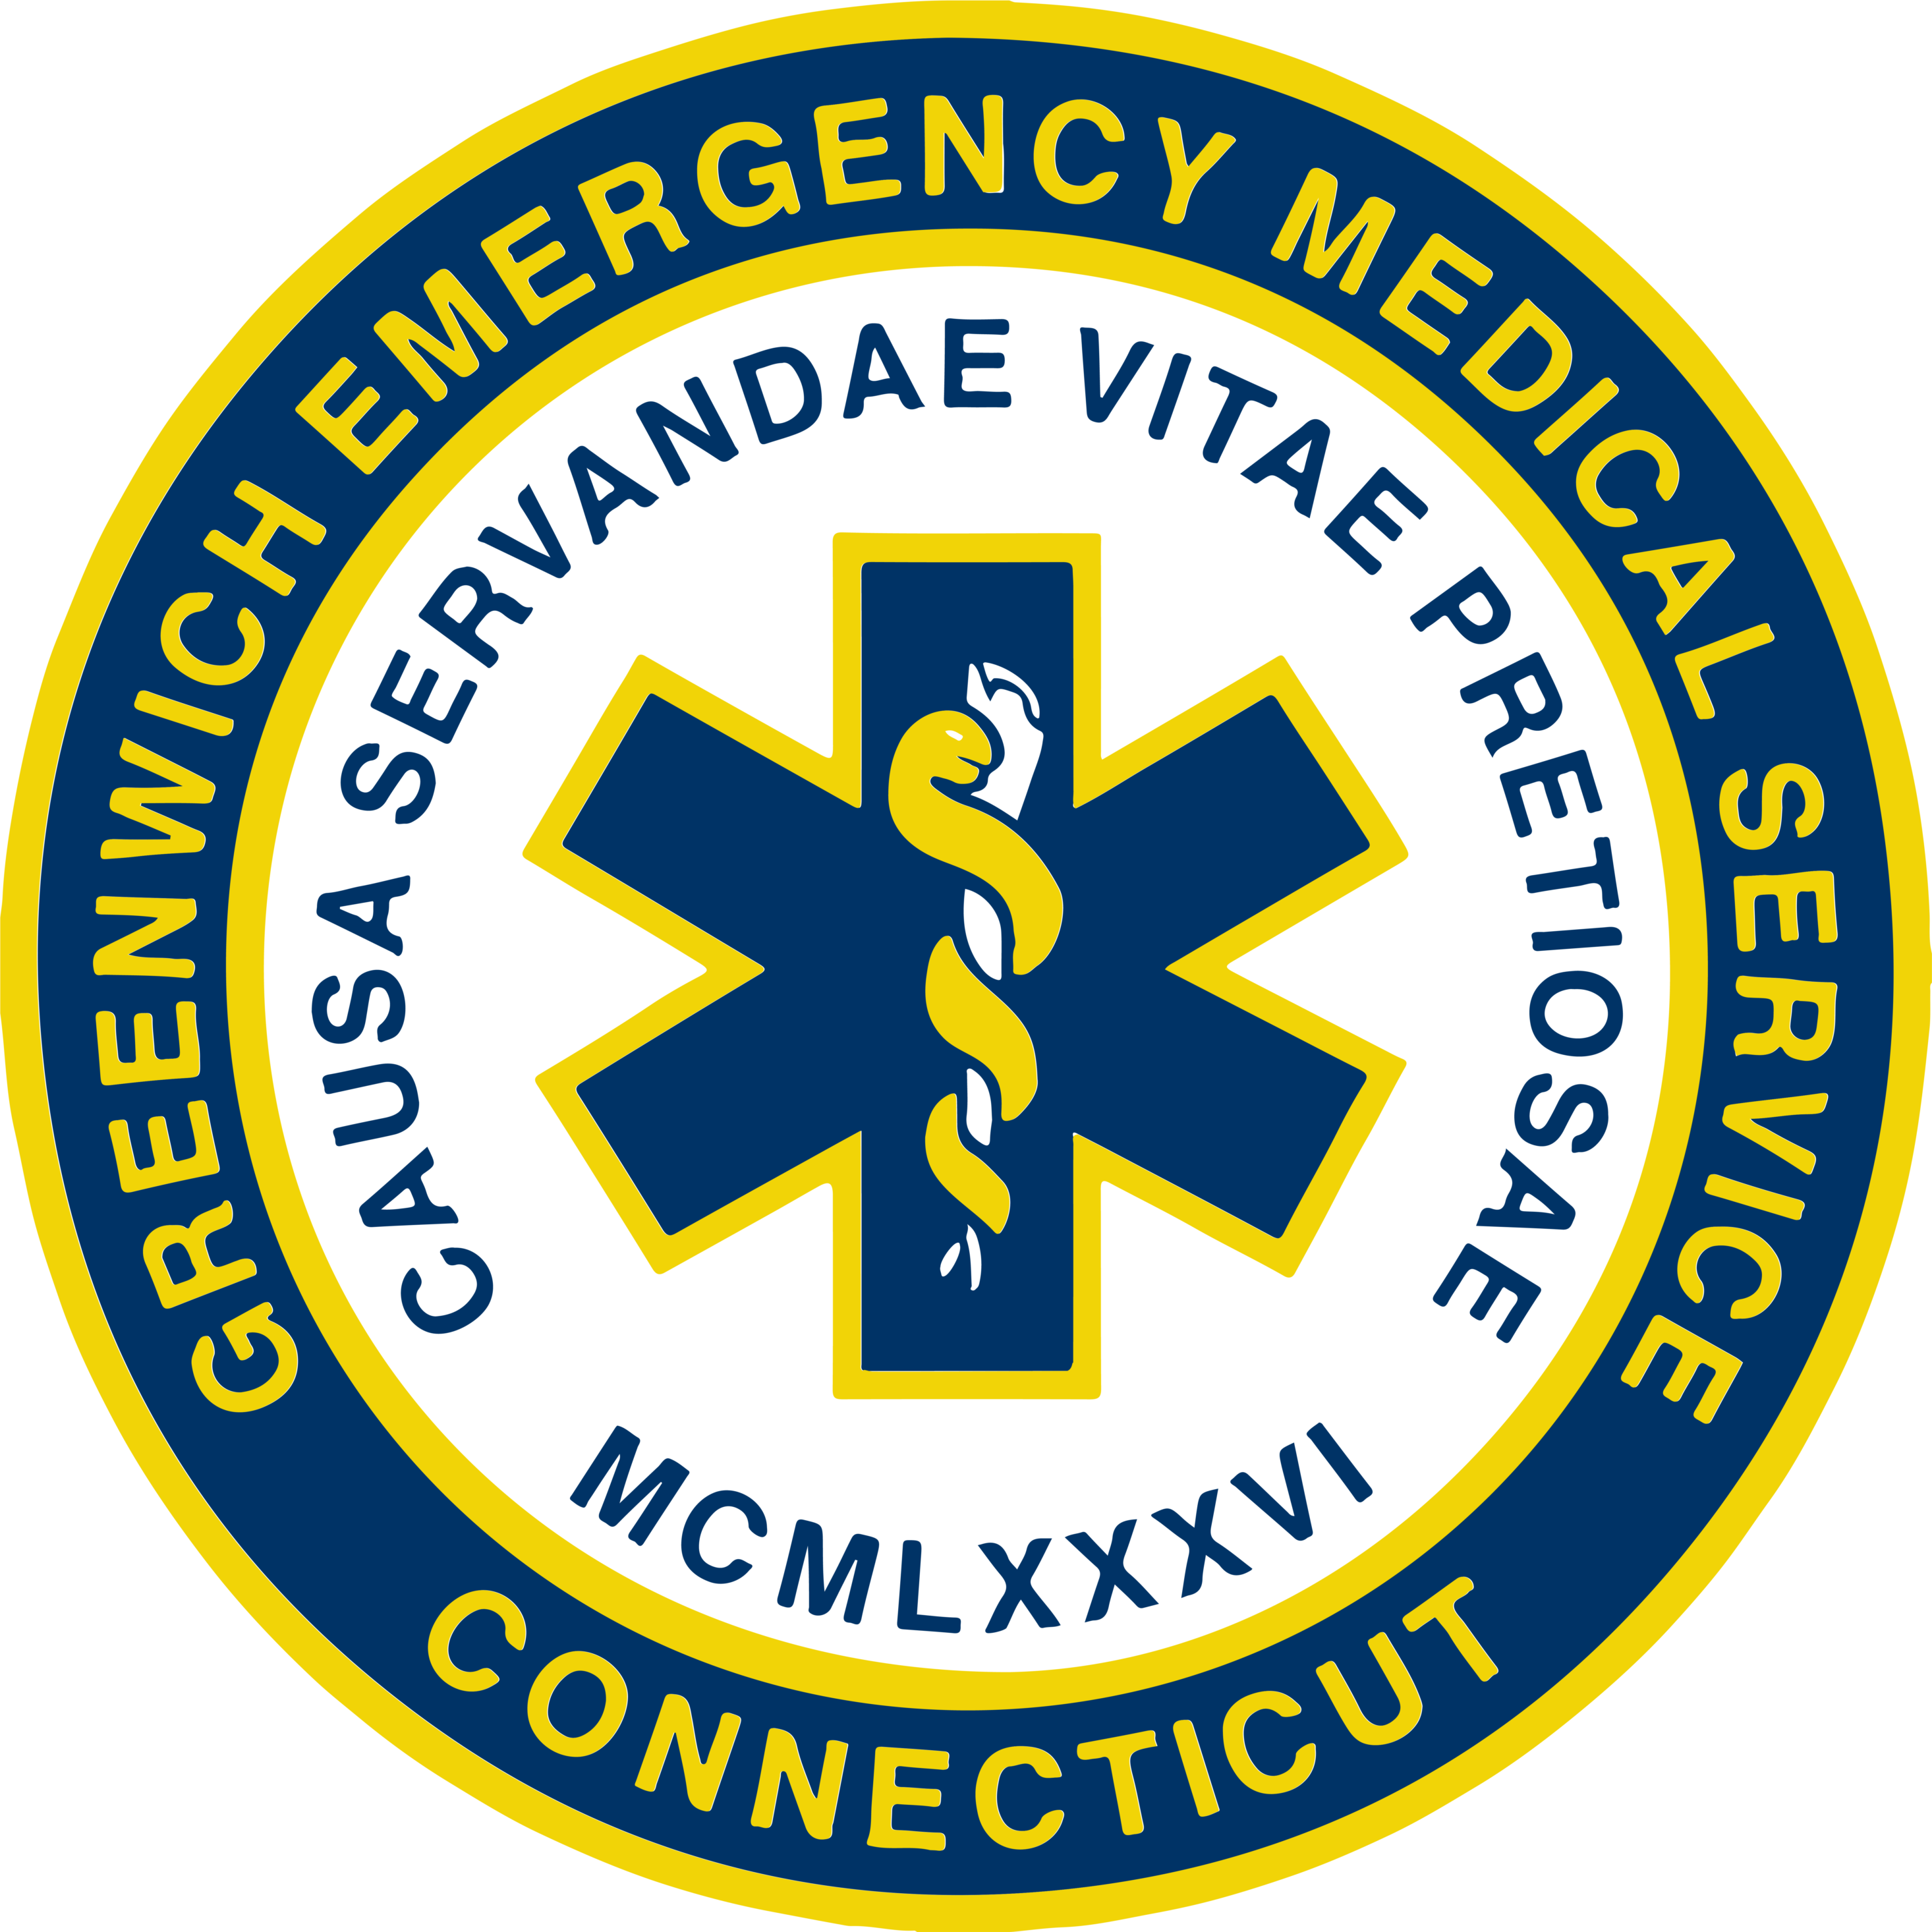 Greenwich Emergency Medical Service logo